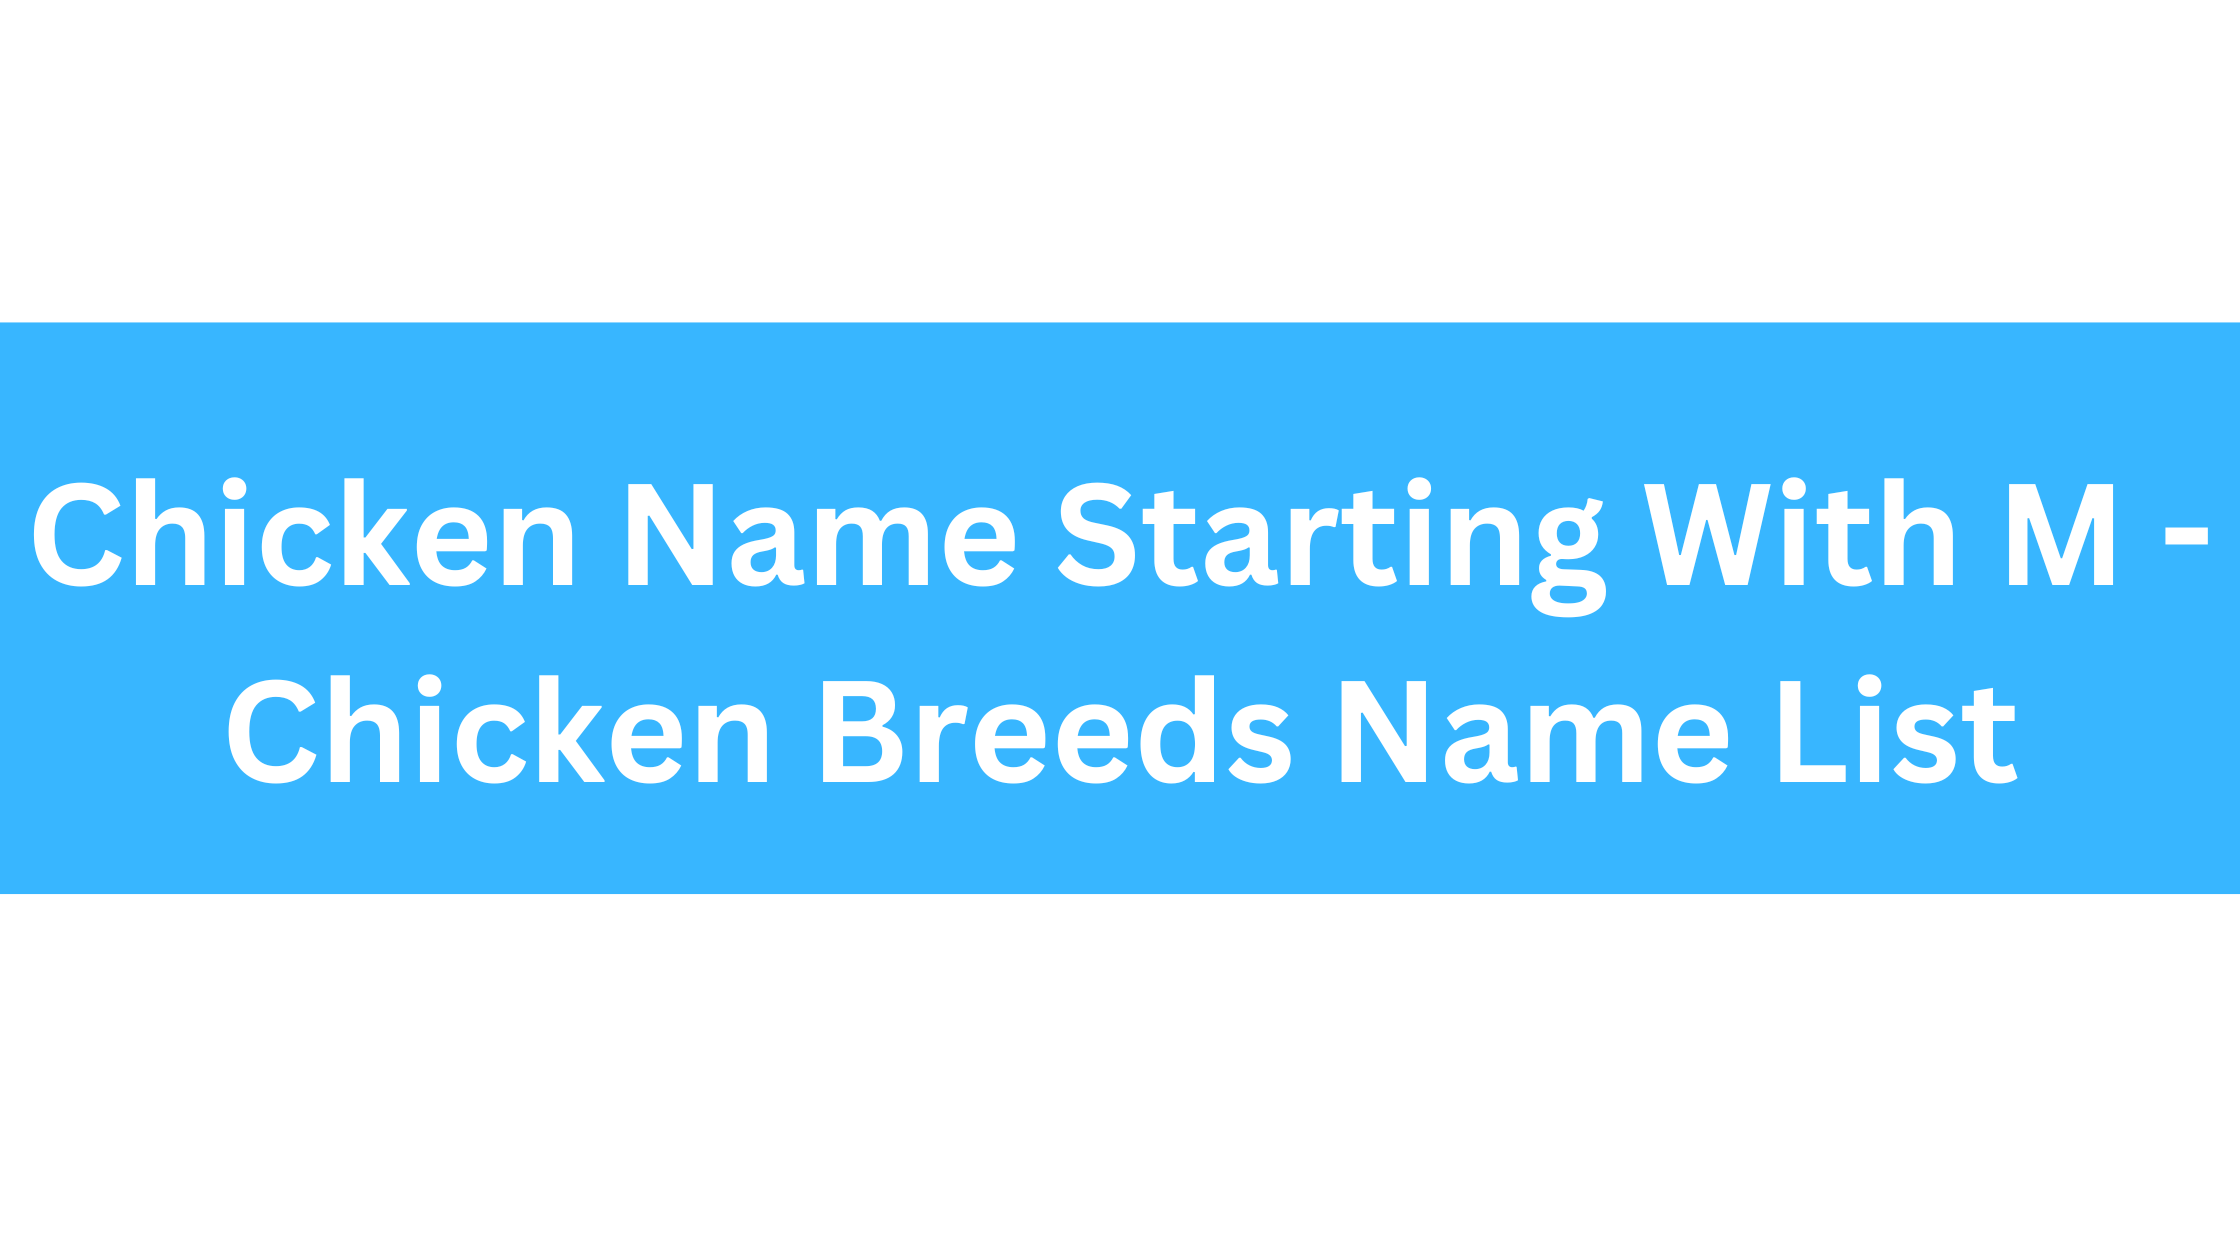 Chicken Breeds That Start With M